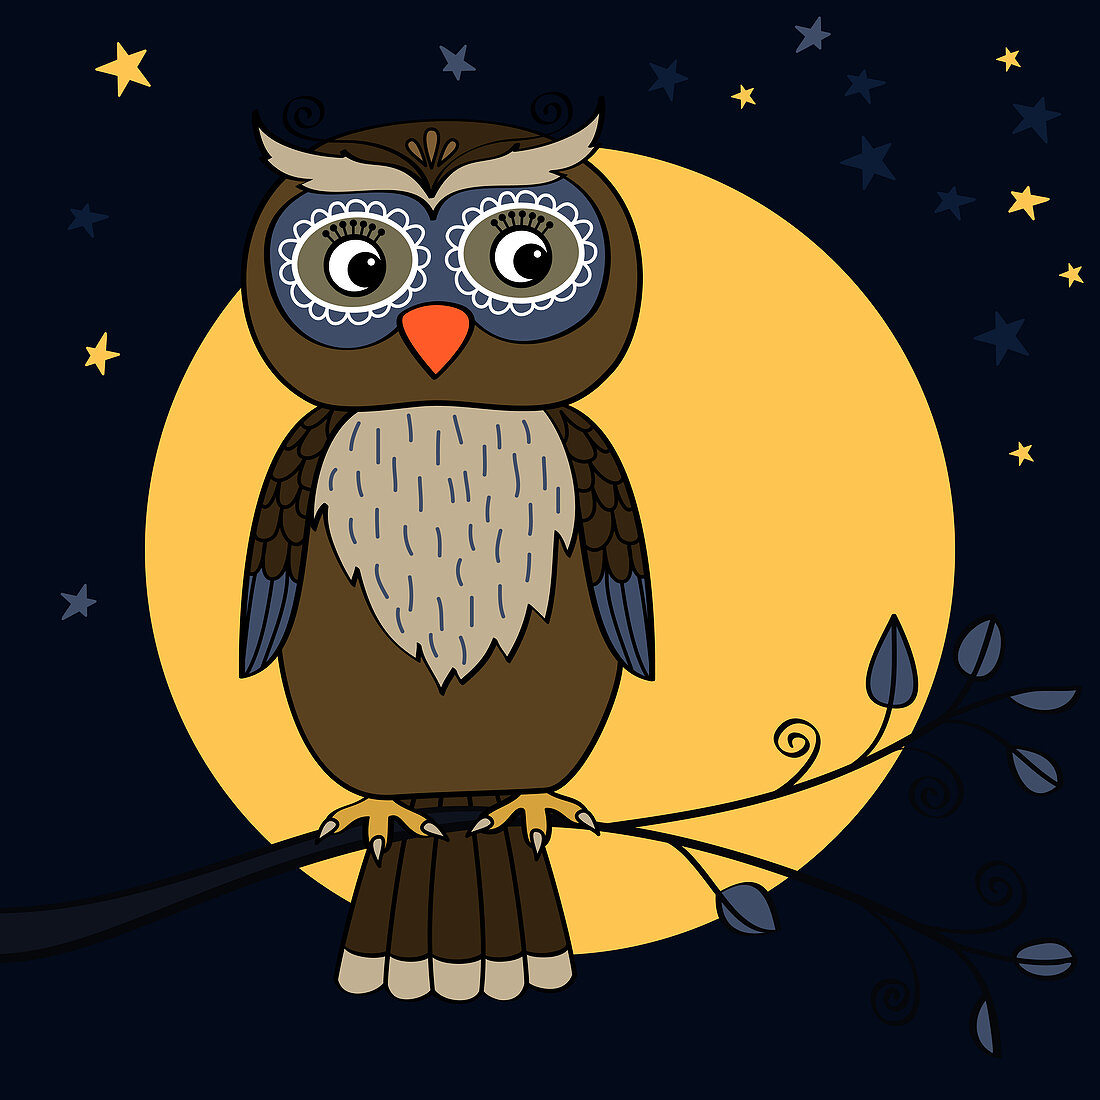 Owl on tree branch at night, illustration